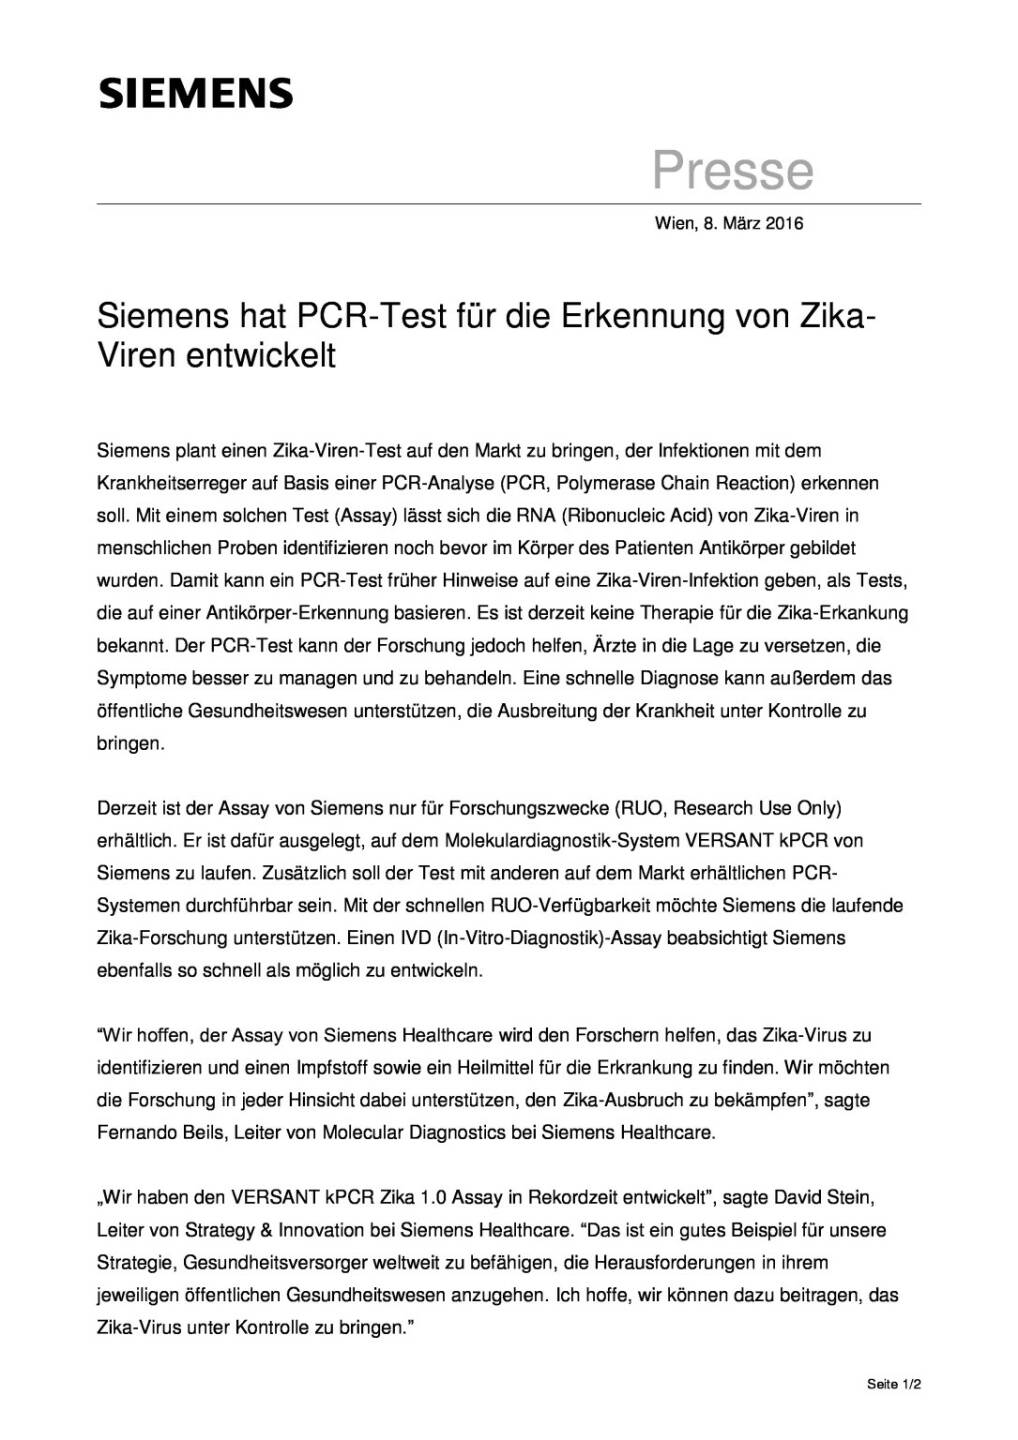 Siemens hat PCR-Test für die Erkennung von Zika-Viren entwickelt, Seite 1/2, komplettes Dokument unter http://boerse-social.com/static/uploads/file_747_siemens_hat_pcr-test_fur_die_erkennung_von_zika-viren_entwickelt.pdf